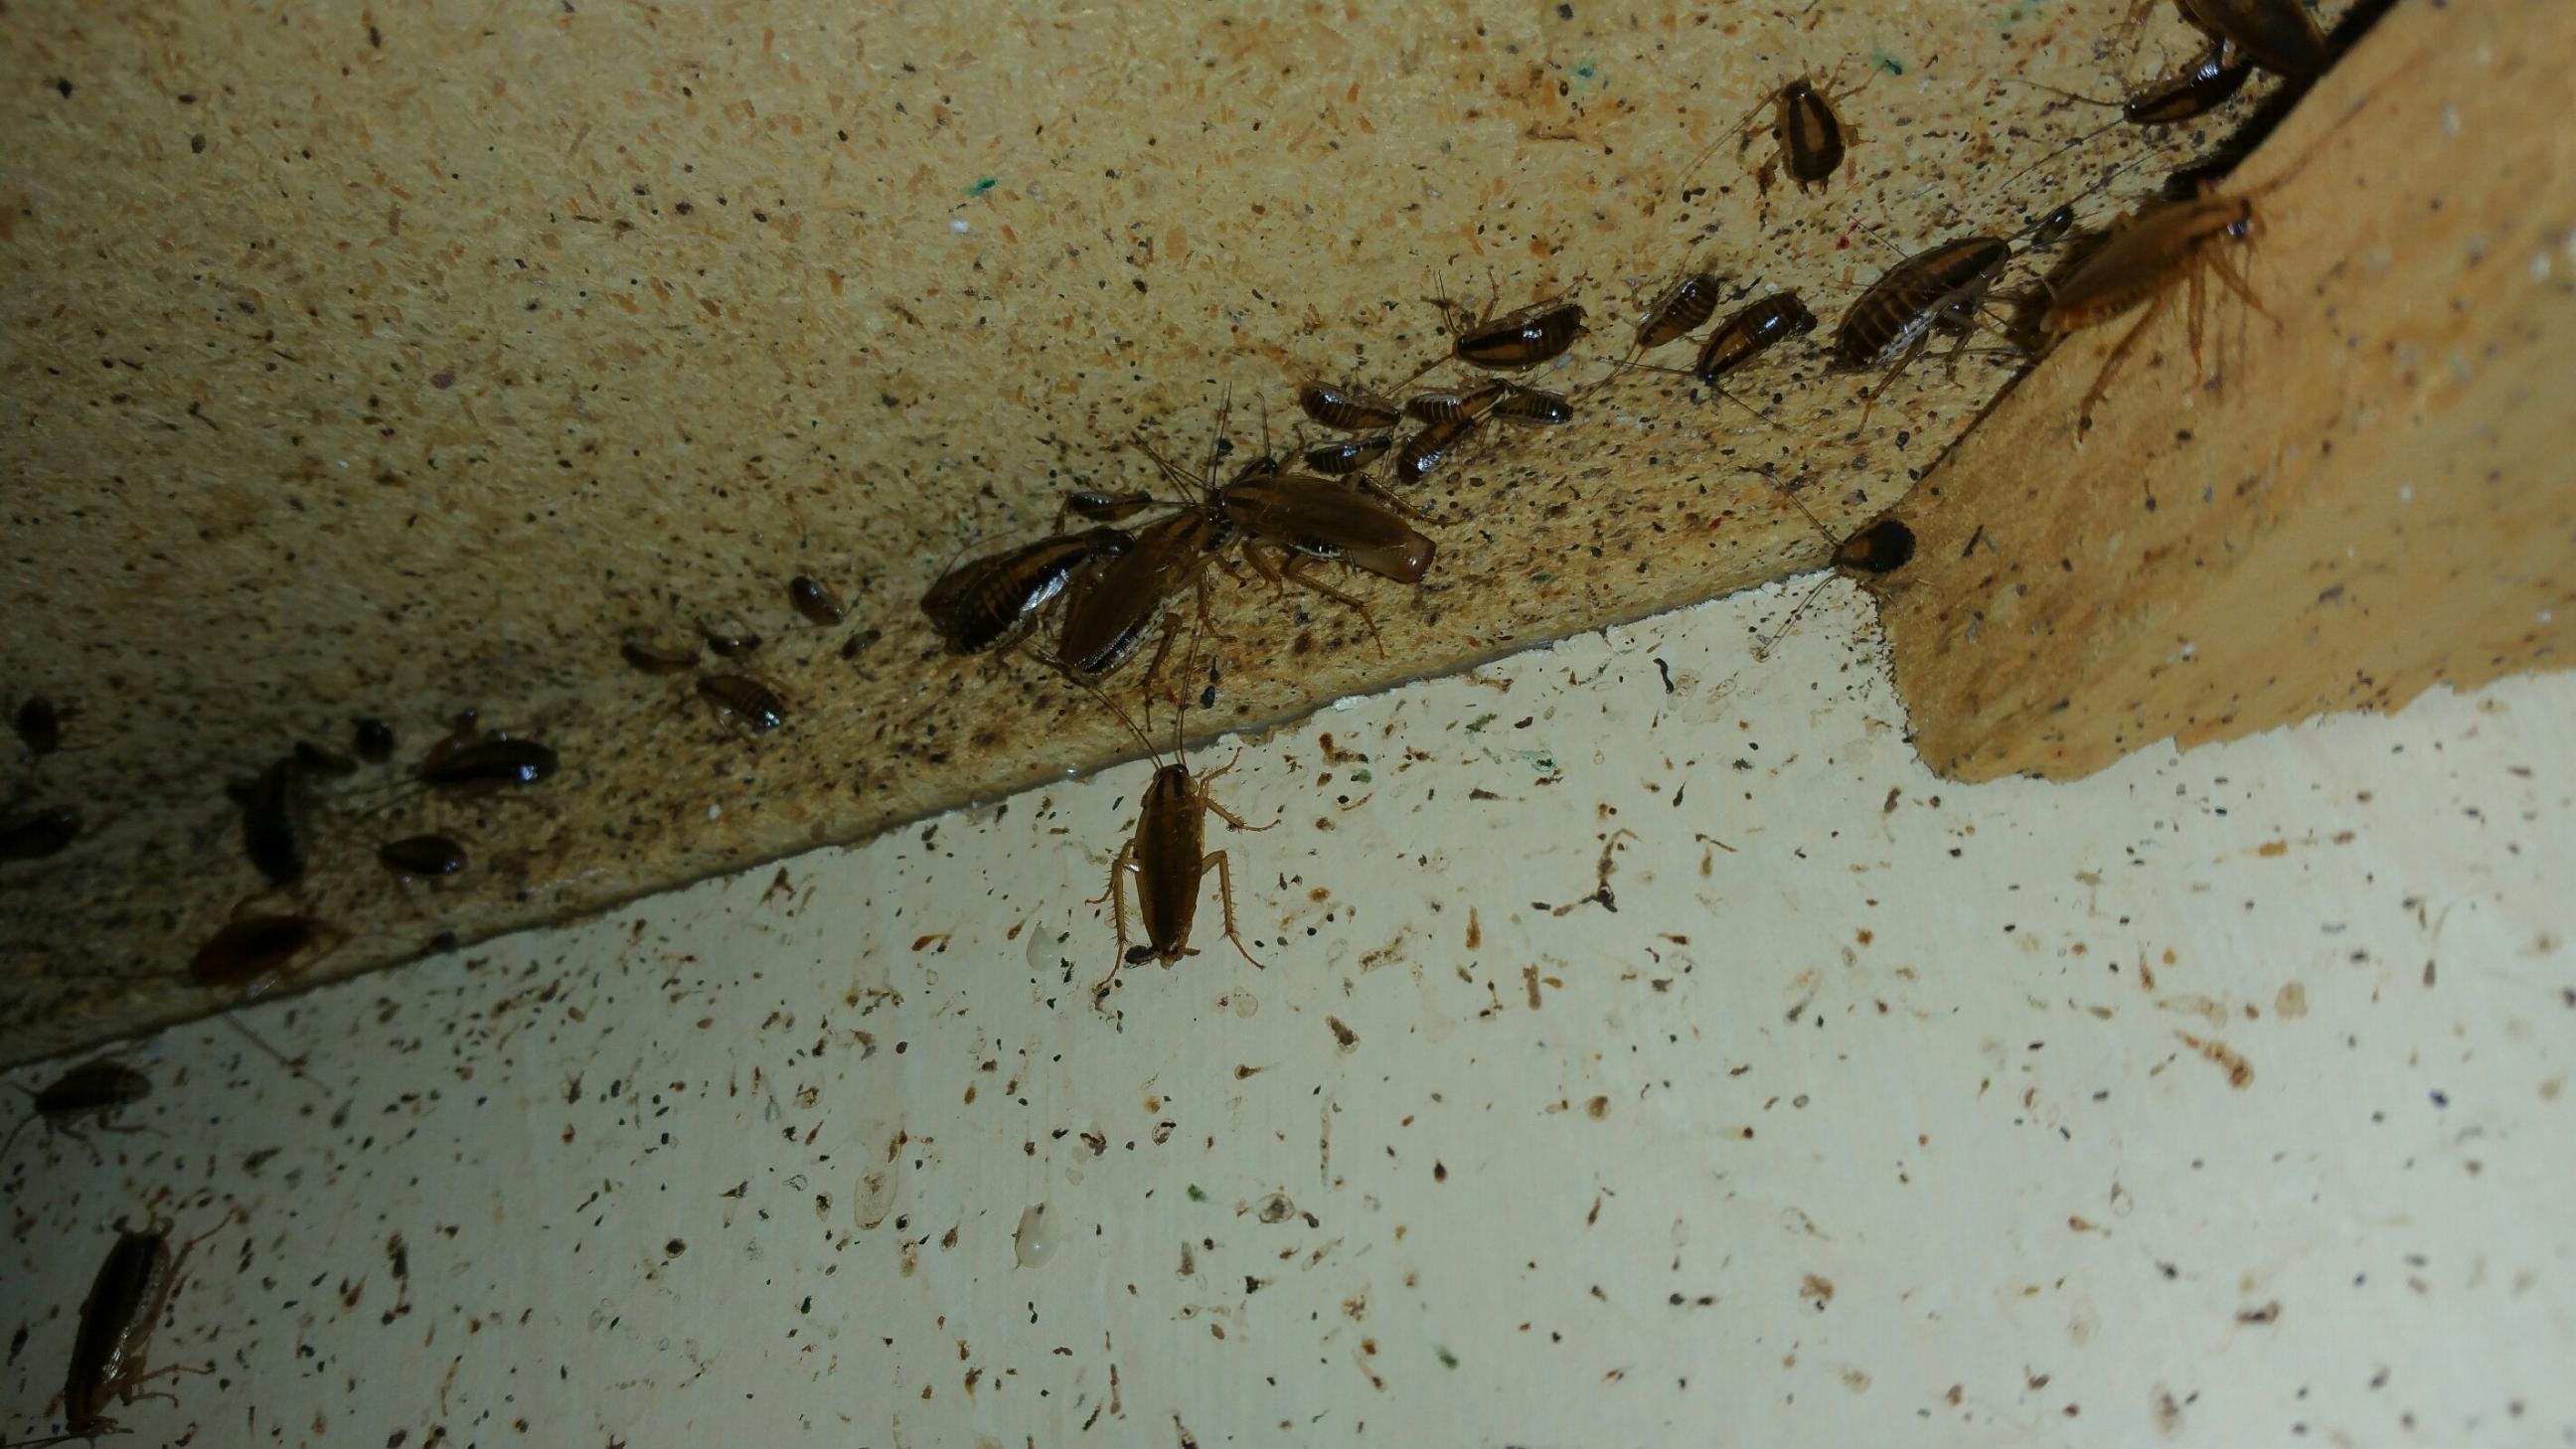 Тараканы в высотном доме